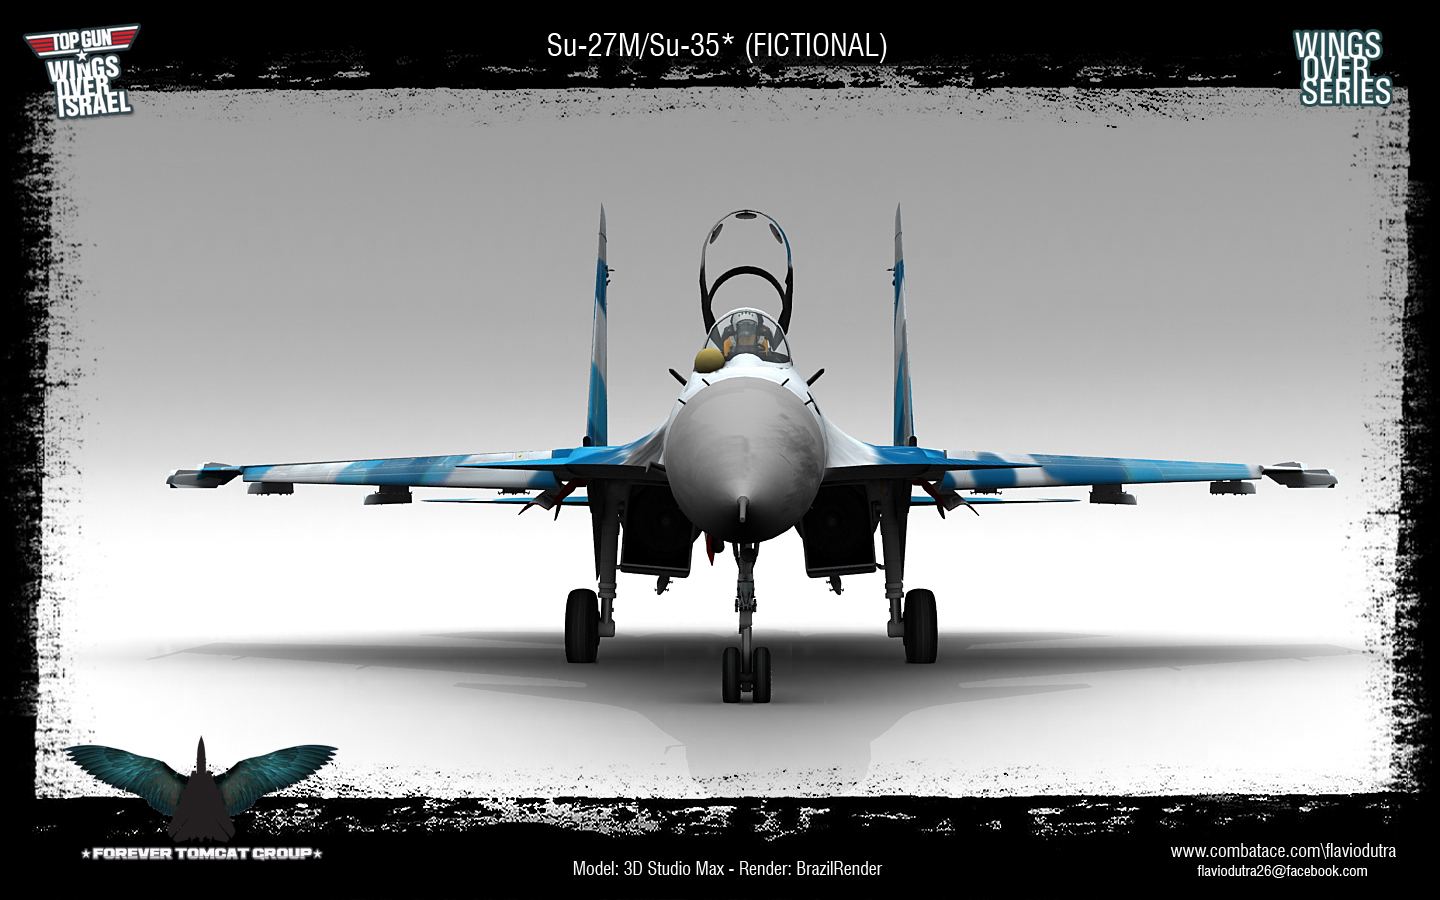 ForeverTomcat_Su-27_Su-35_07.jpg